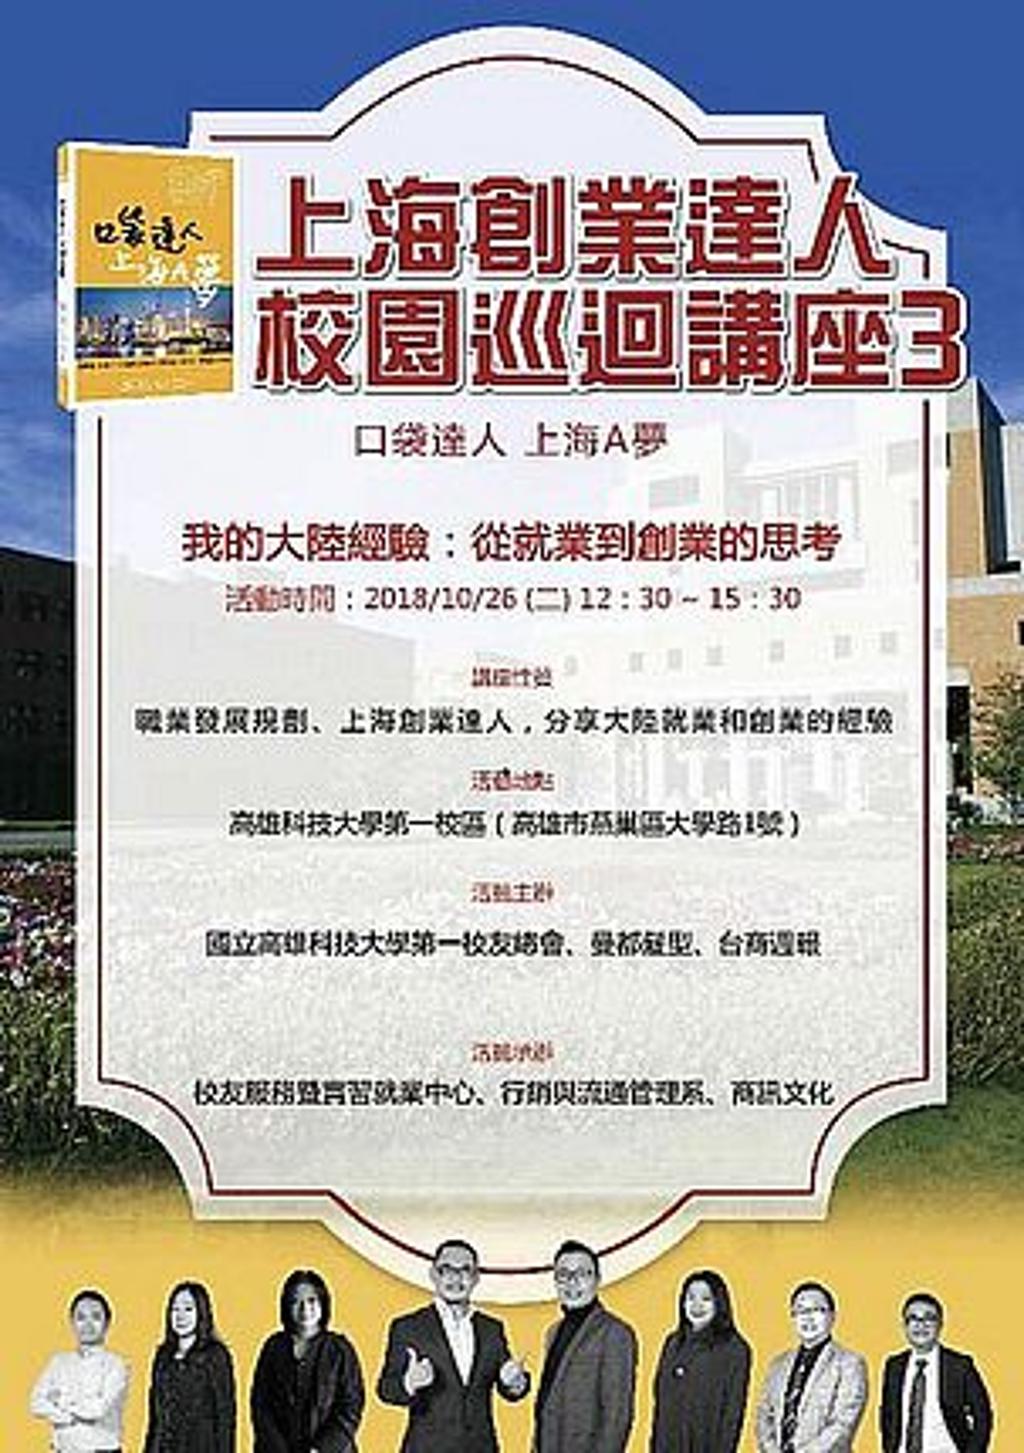 口袋達人上海A夢》書中達人將於10月26日在高雄科技大學第一校區舉辦校園講座，歡迎想要跨海築夢的朋友共襄盛舉